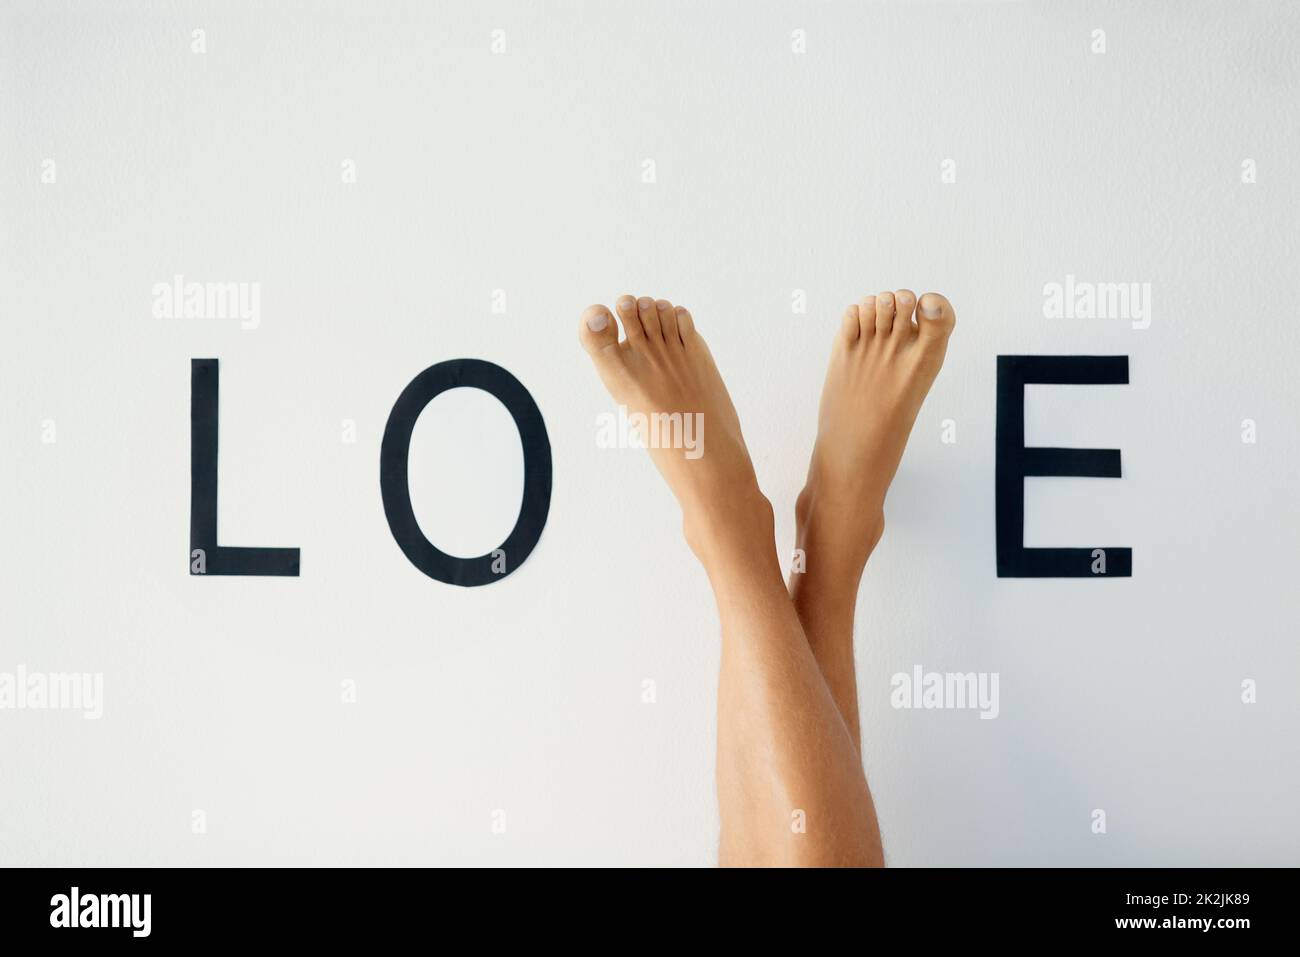 Stehe auf Liebe. Nahaufnahme einer nicht erkennbaren Person, die die Beine kreuzte, wobei seine Füße den Buchstaben V im Wort LIEBE bilden. Stockfoto